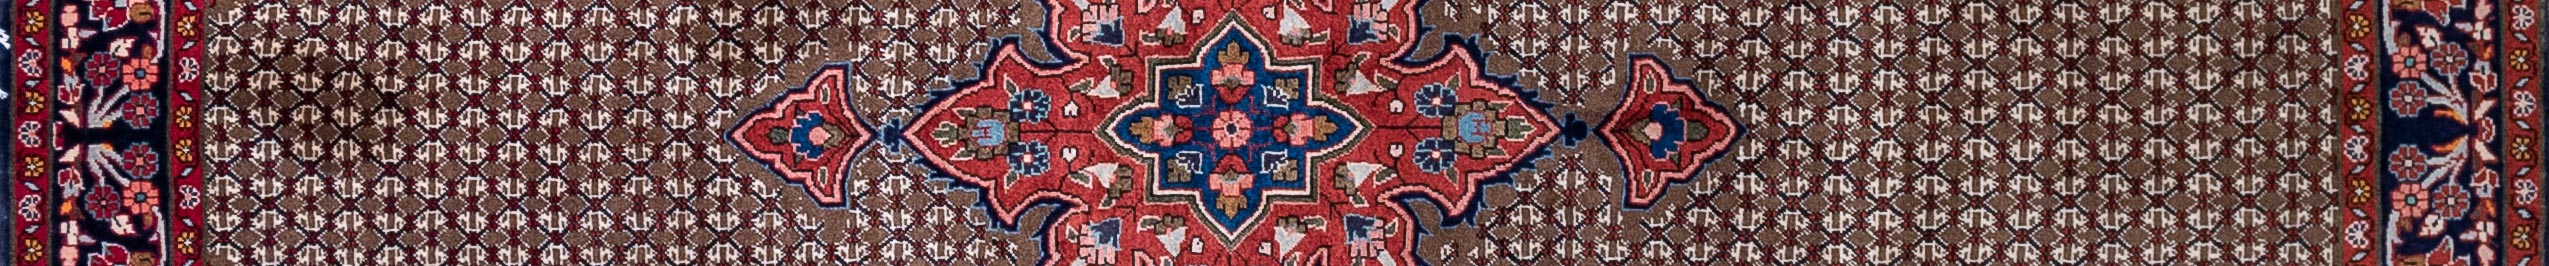 Koliai Persian Carpet Rug N1Carpet Canada Montreal Tapis Persan 790